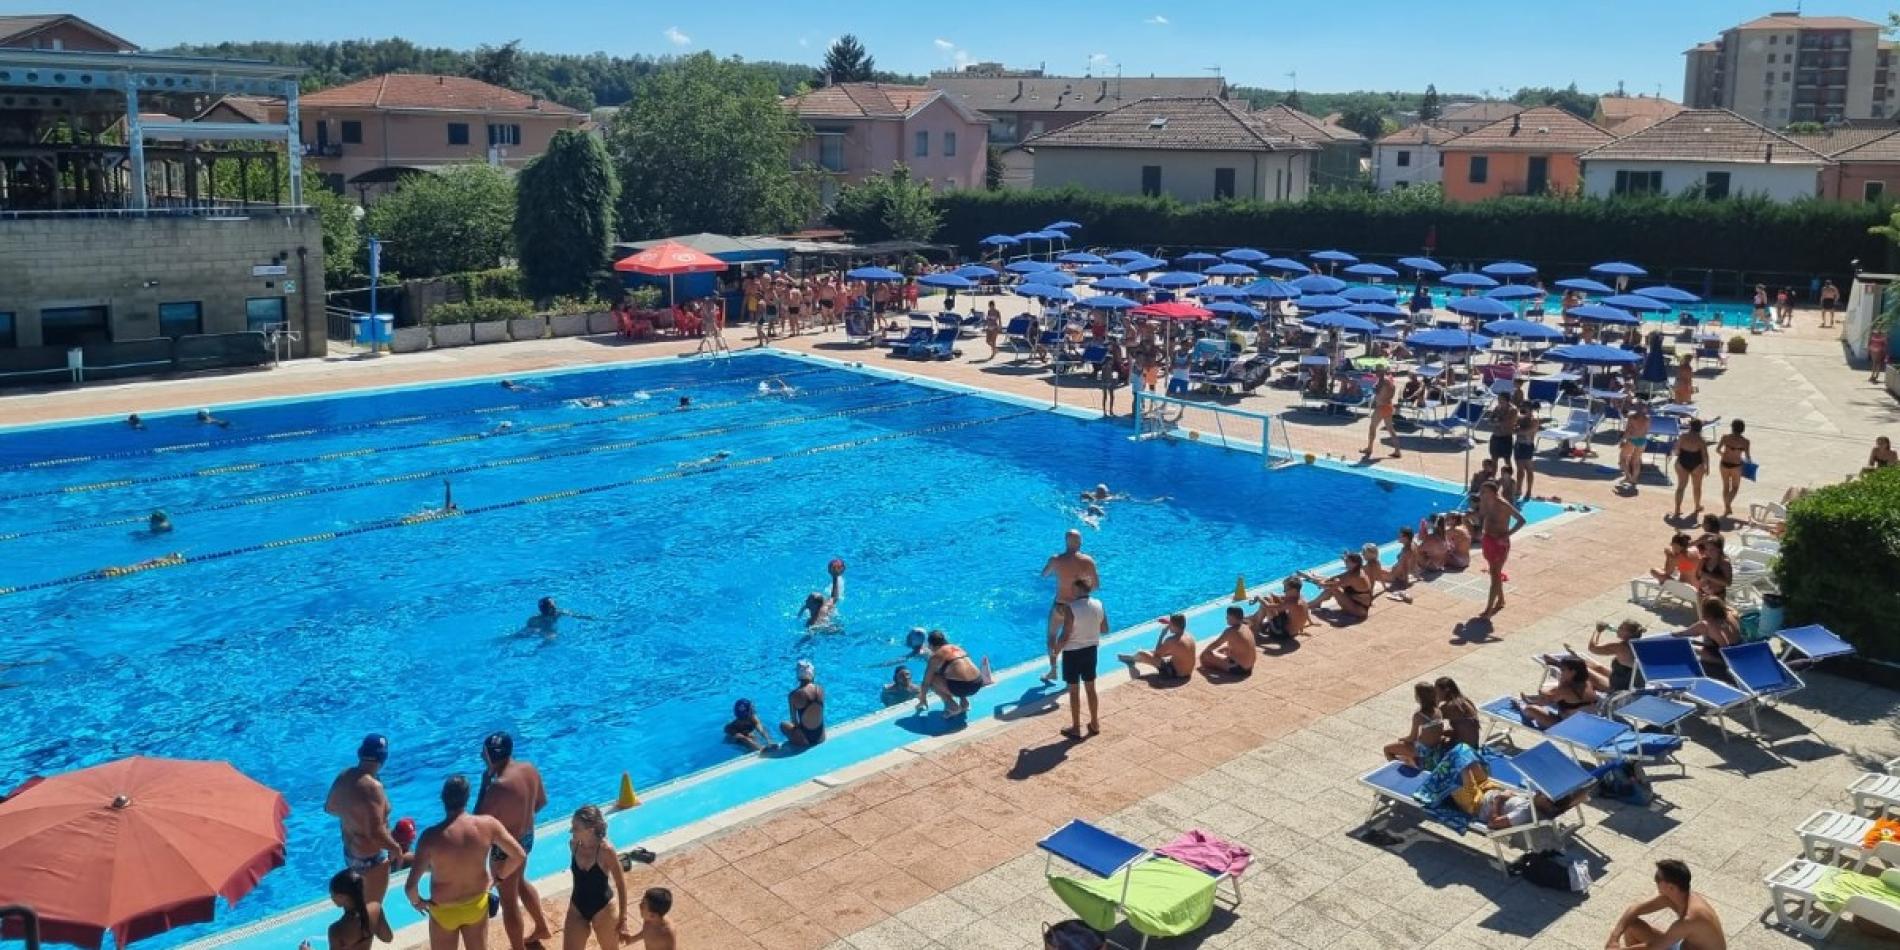 Un tuffo a scuola: per 500 studenti lezioni gratuite di nuoto